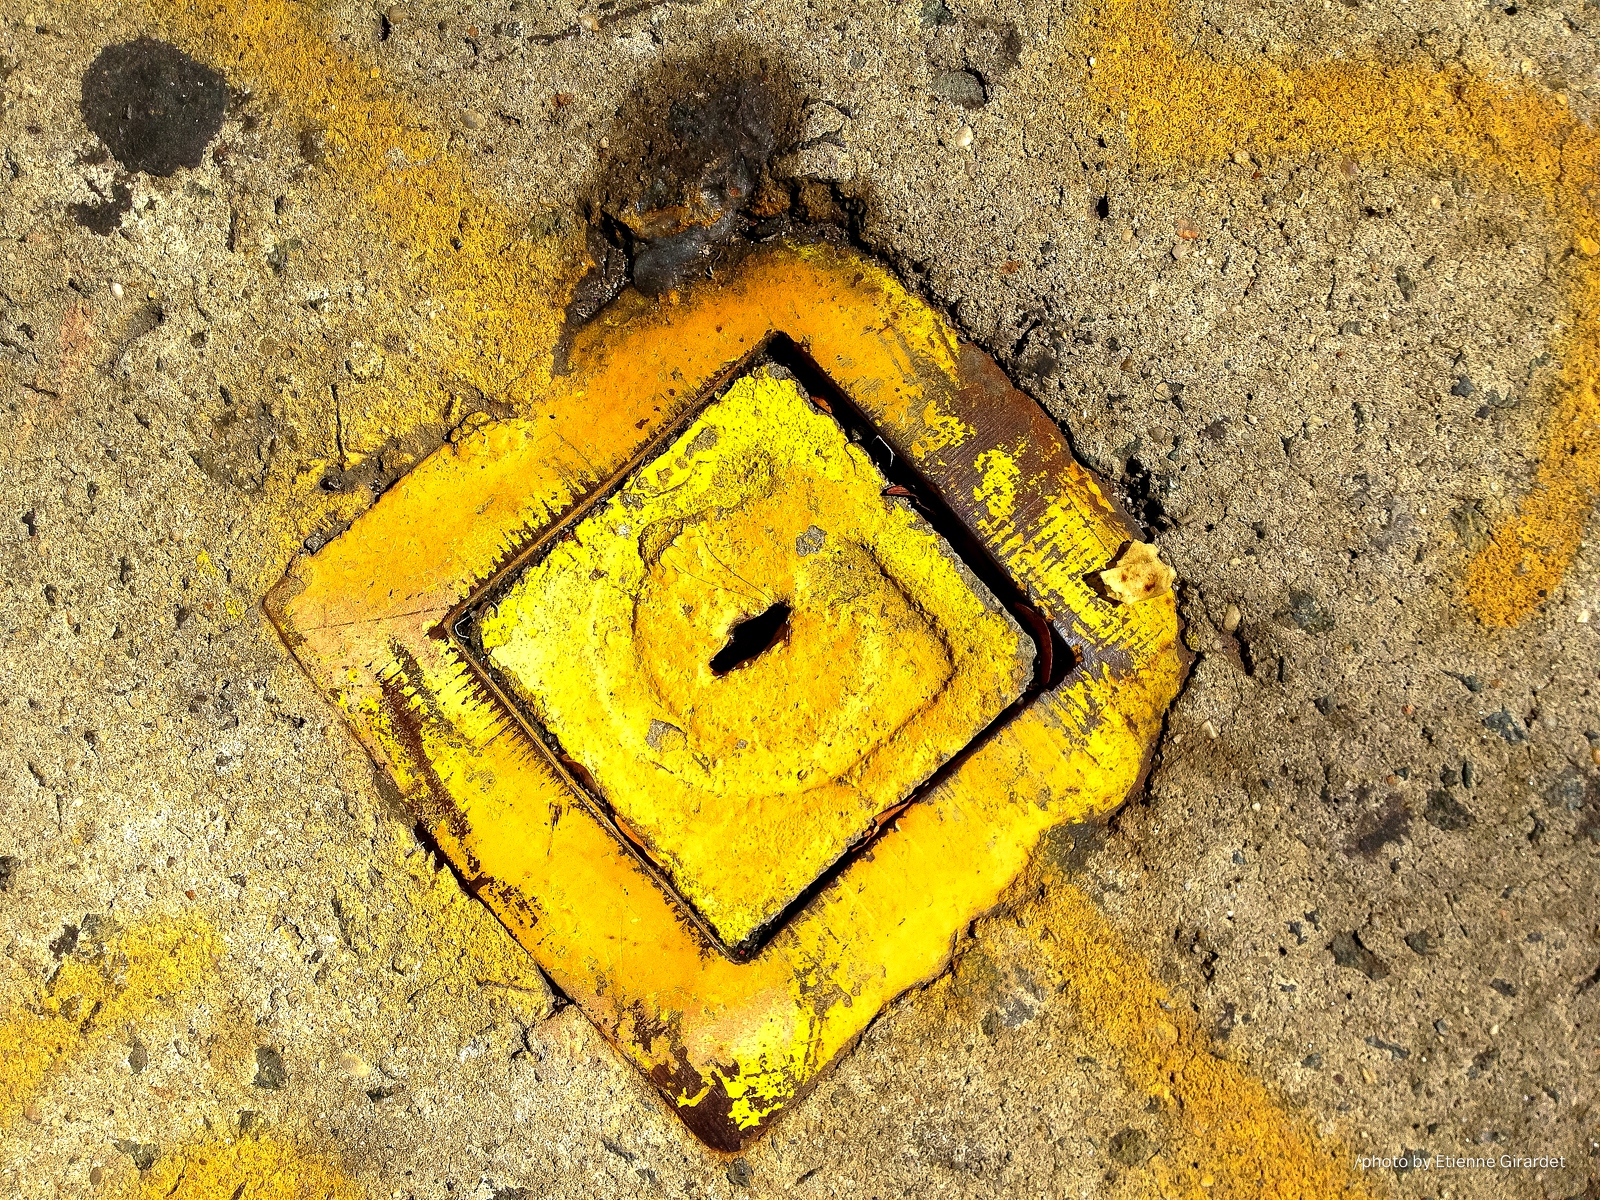 201210_01_IMG_4921-manhole-cover--by-E-Girardet.jpg